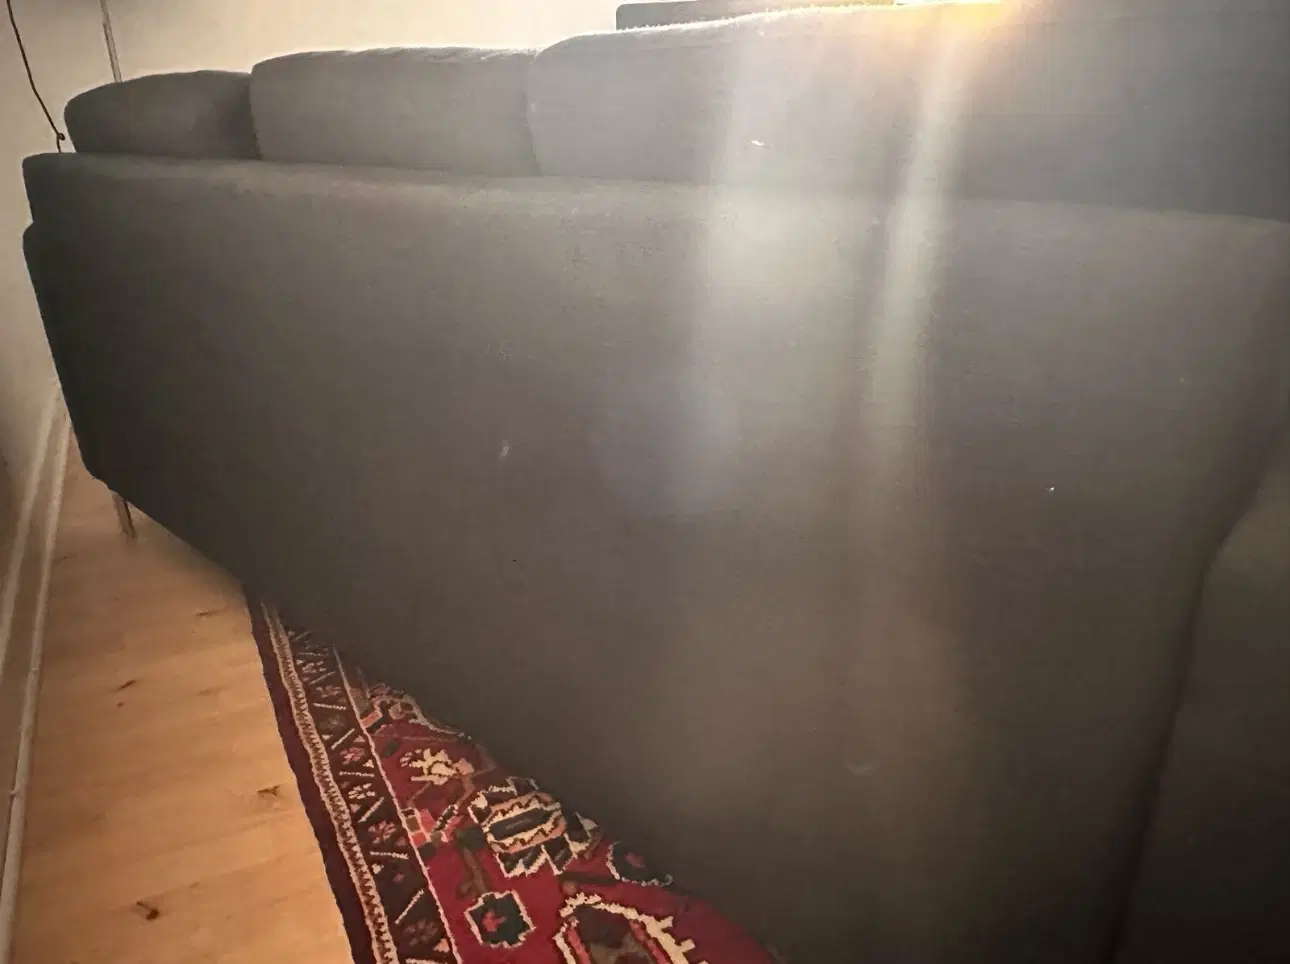 Lækker velholdt sofa fra Hjort Knudsen